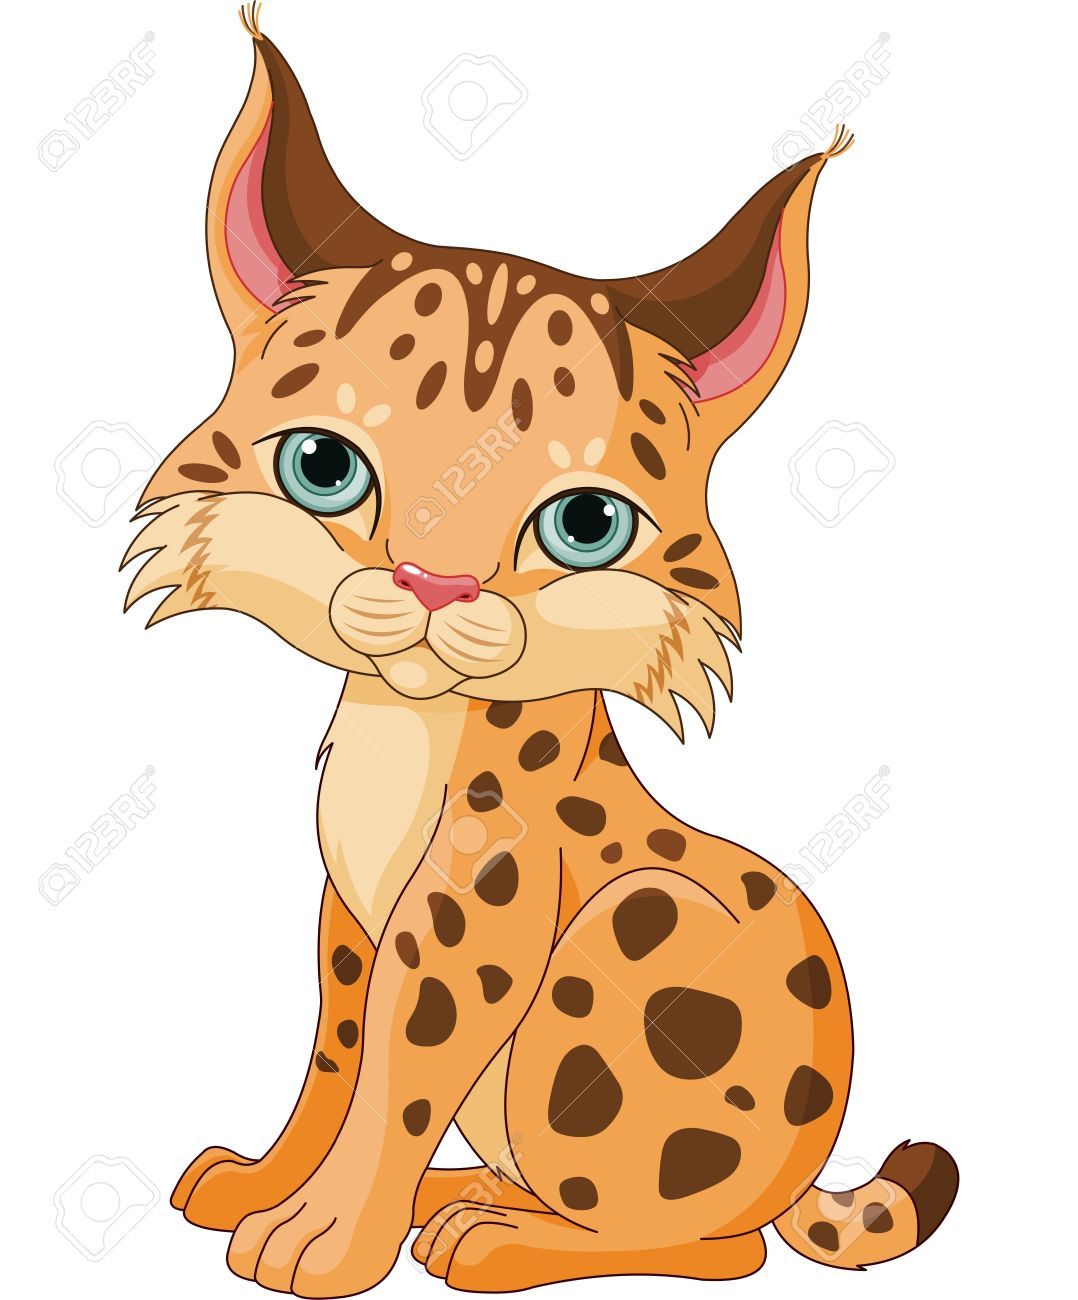 Bobcat clipart lynx.  illustration of cute